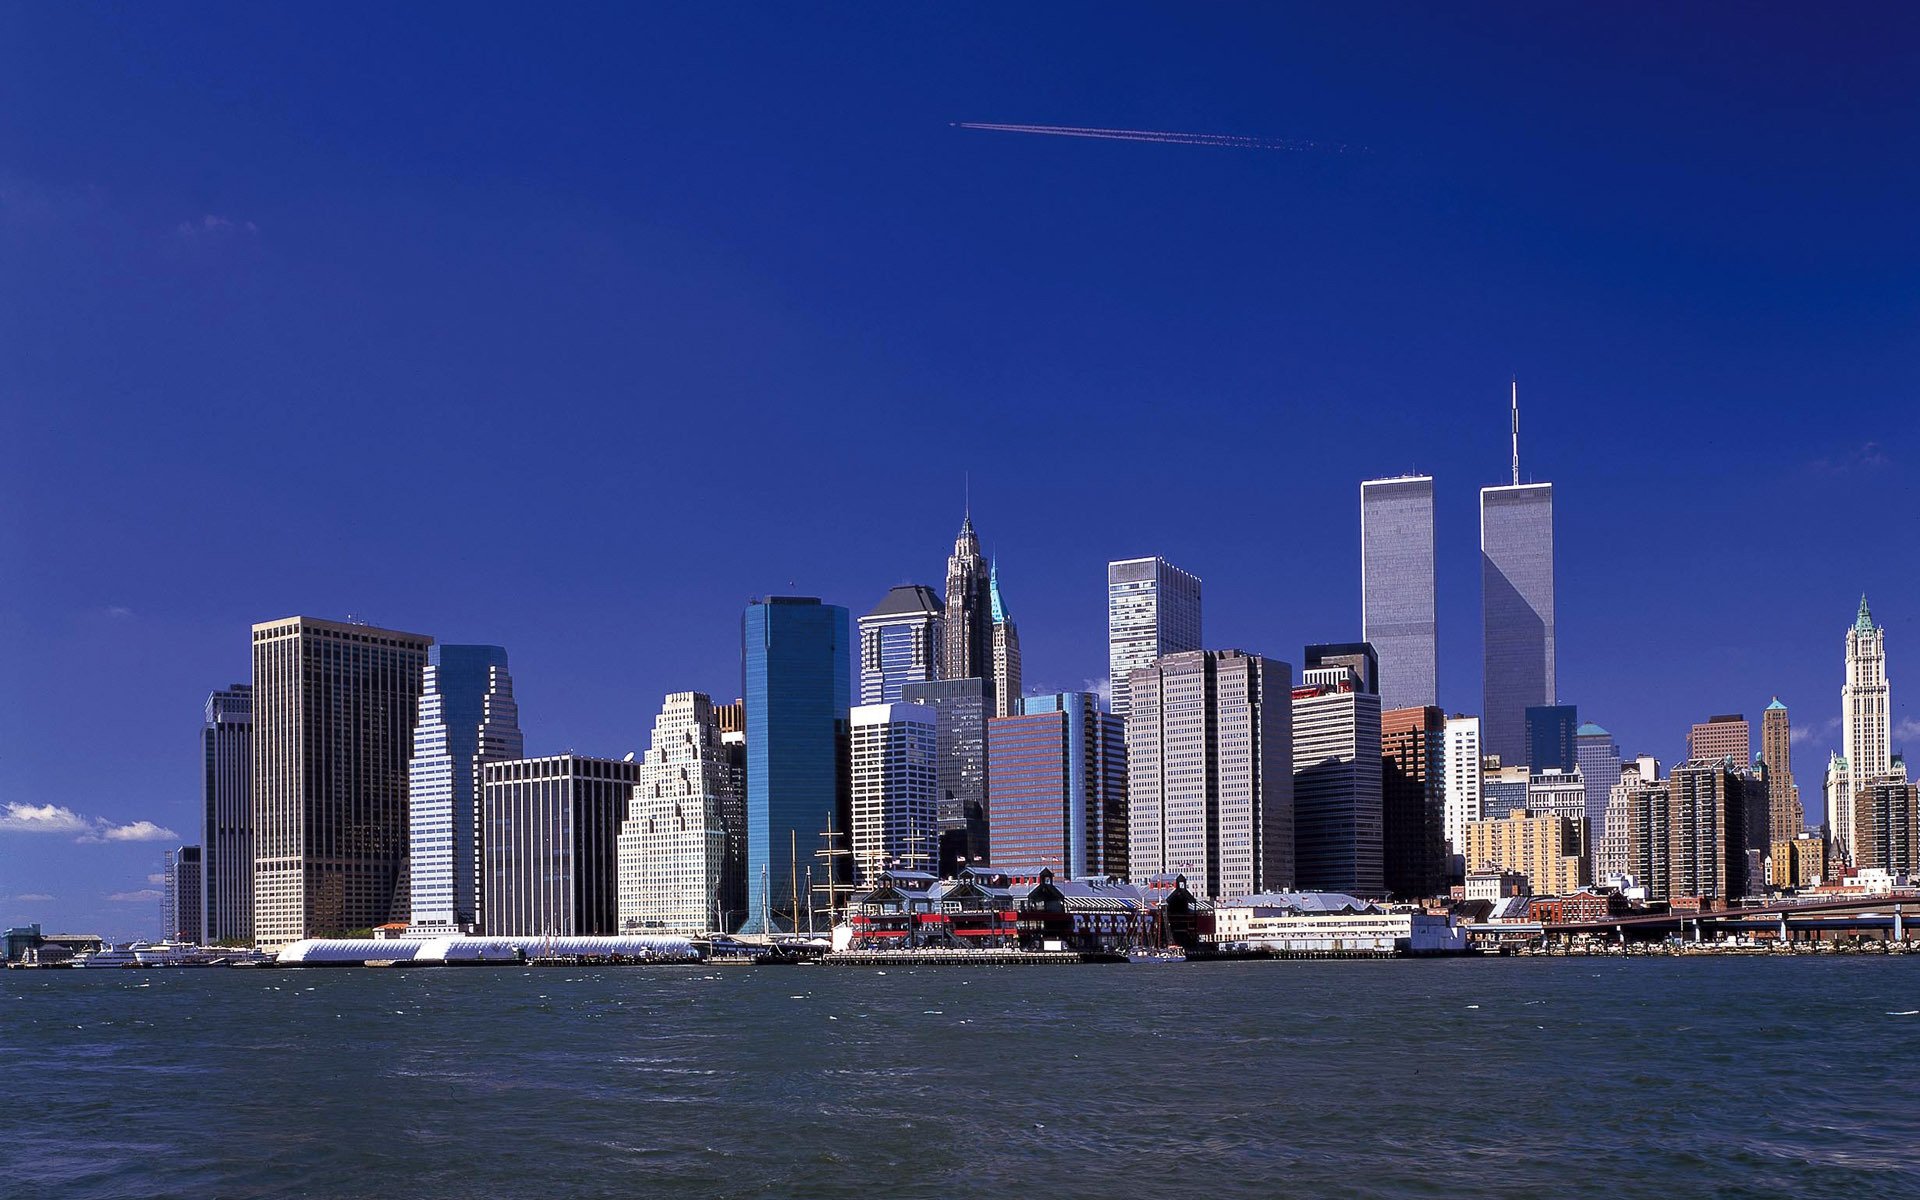 цмт нью-йорк всемирный торговый центр башни-близнецы втц 11 сентября небоскребы река город манхэттен обои